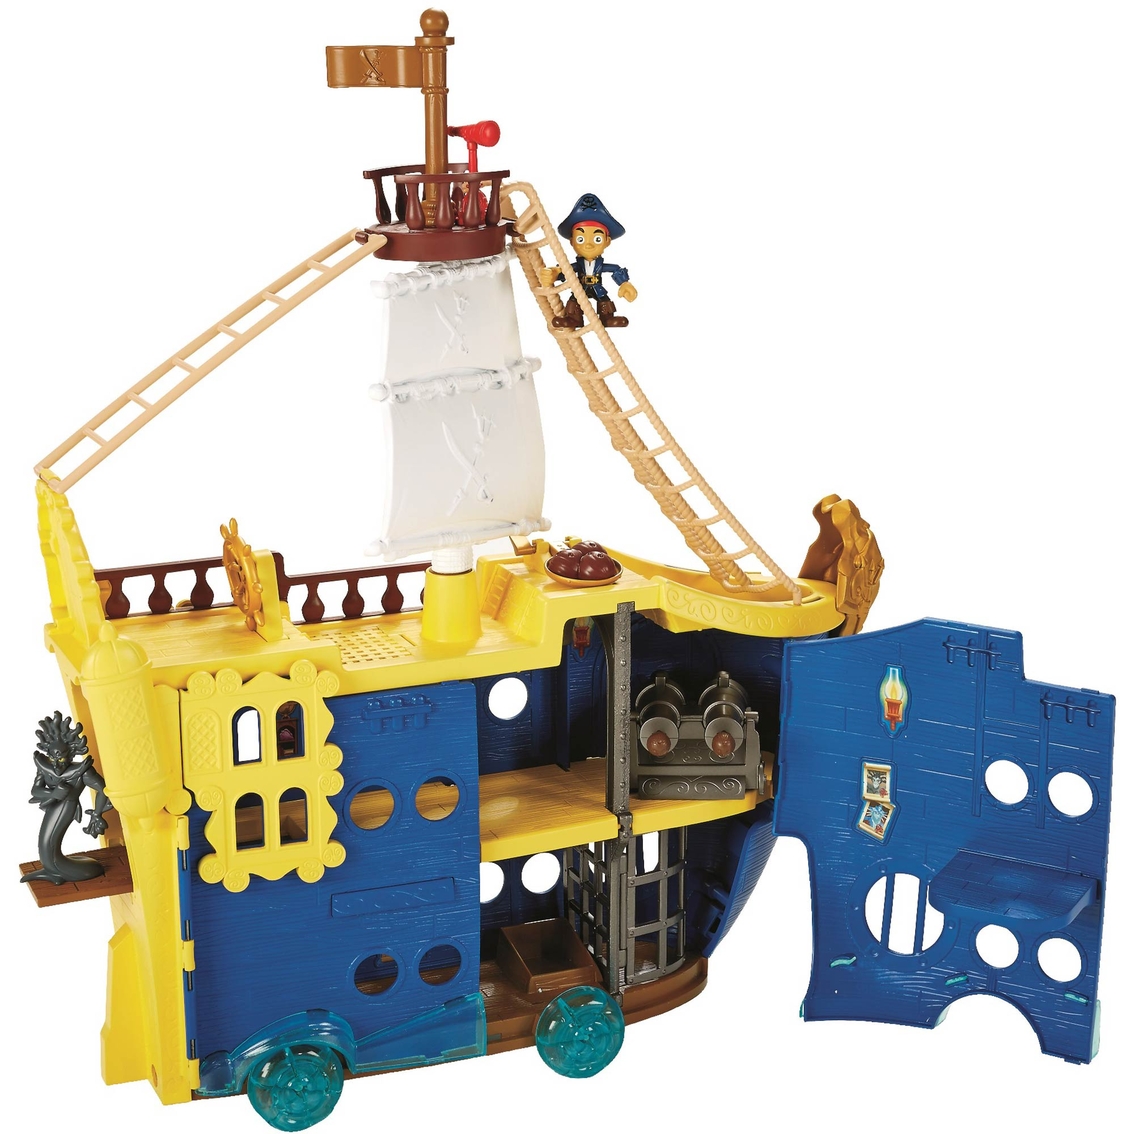 disney pirate toys